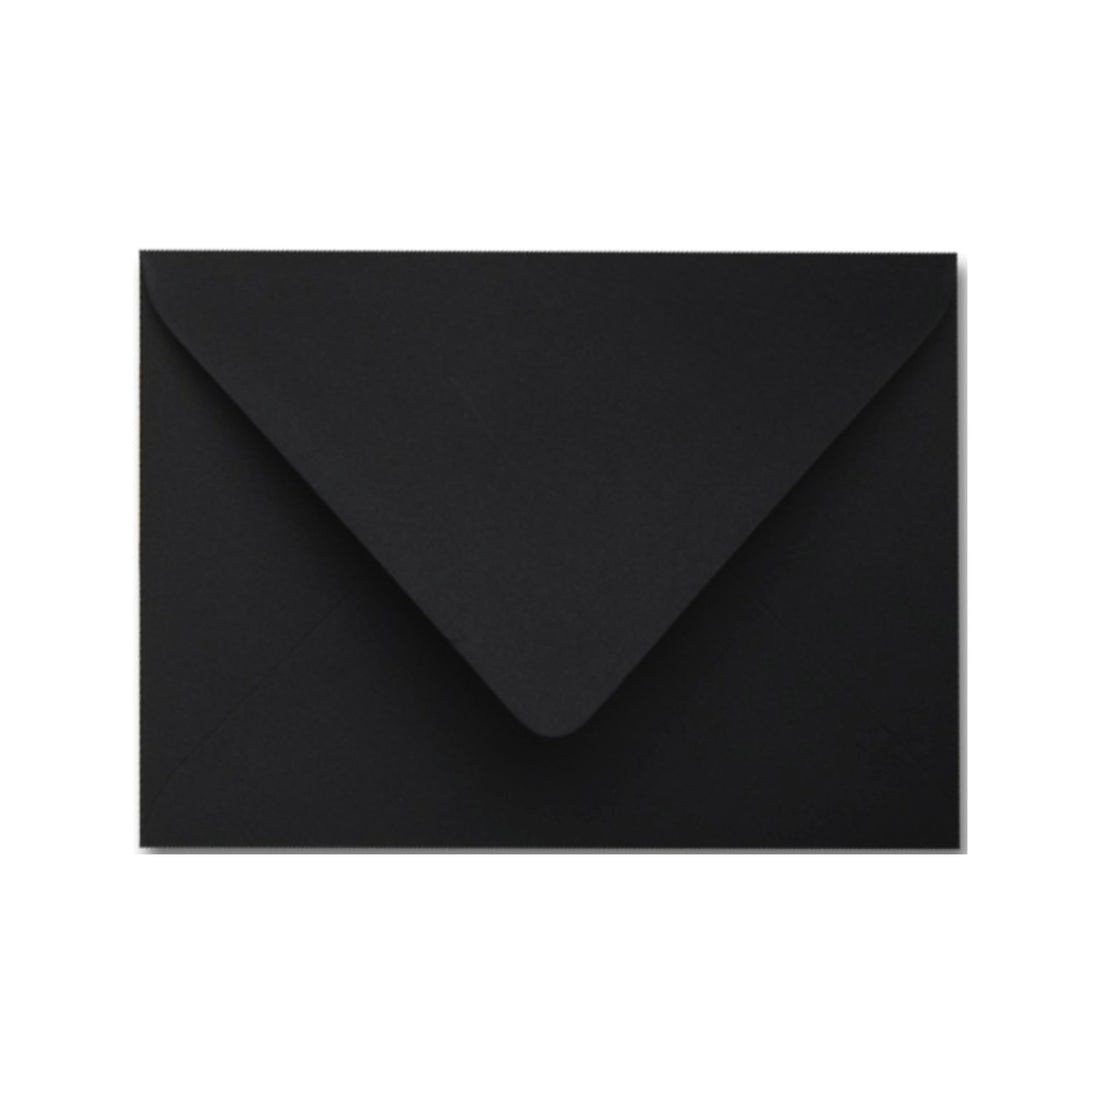 Black Envelopes - Pack of 25